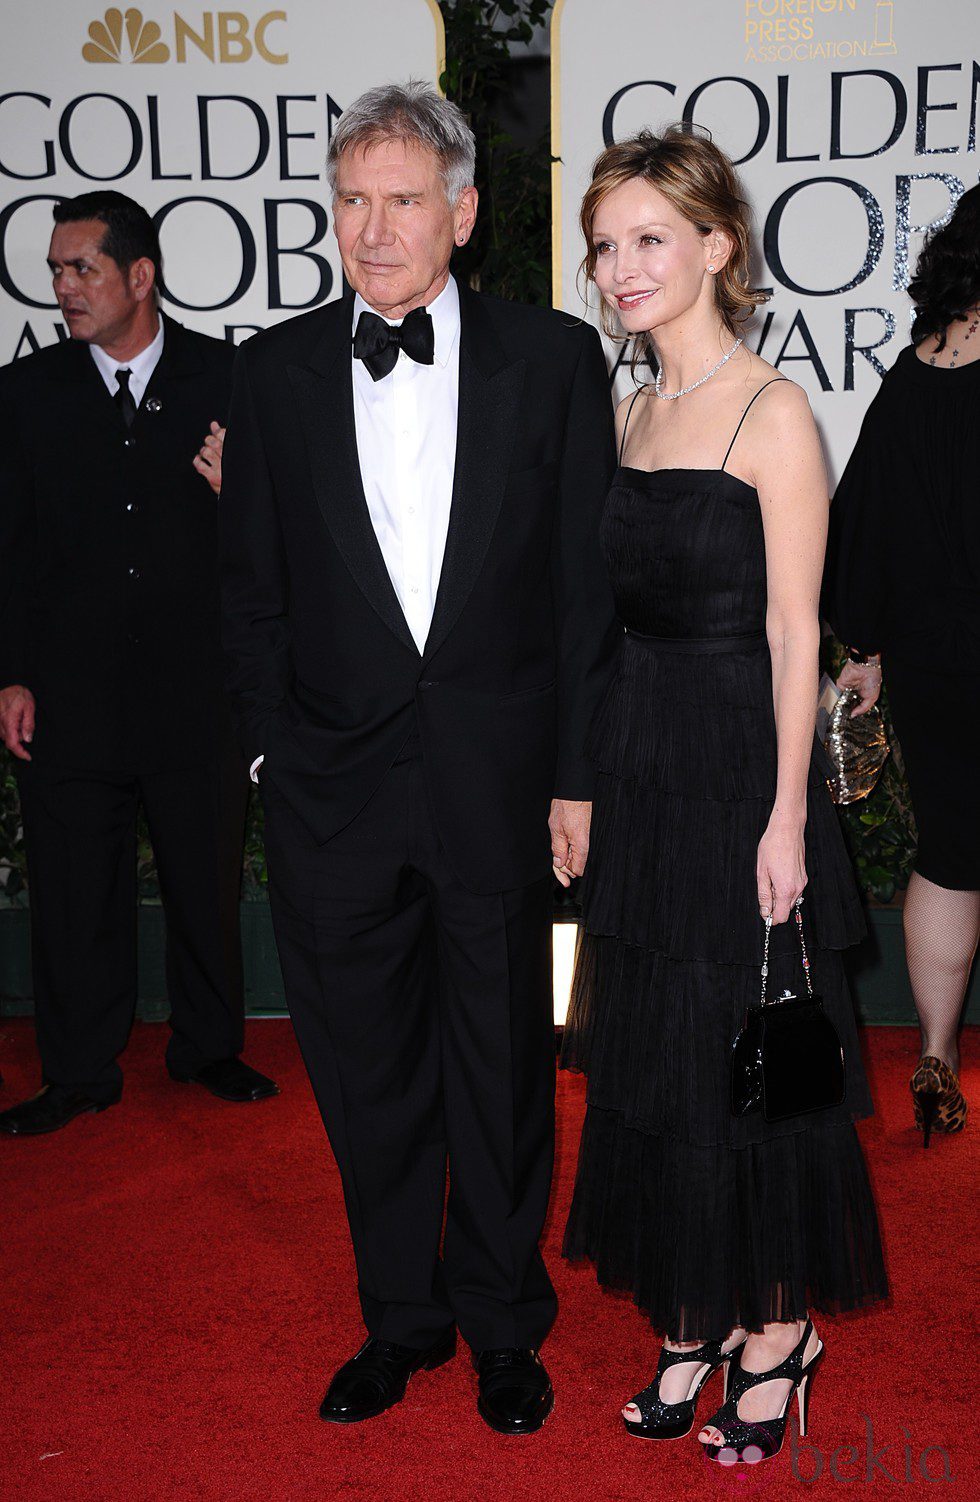 Harrison Ford Y Calista Flockhart en la alfombra roja de los Globos de Oro 2012